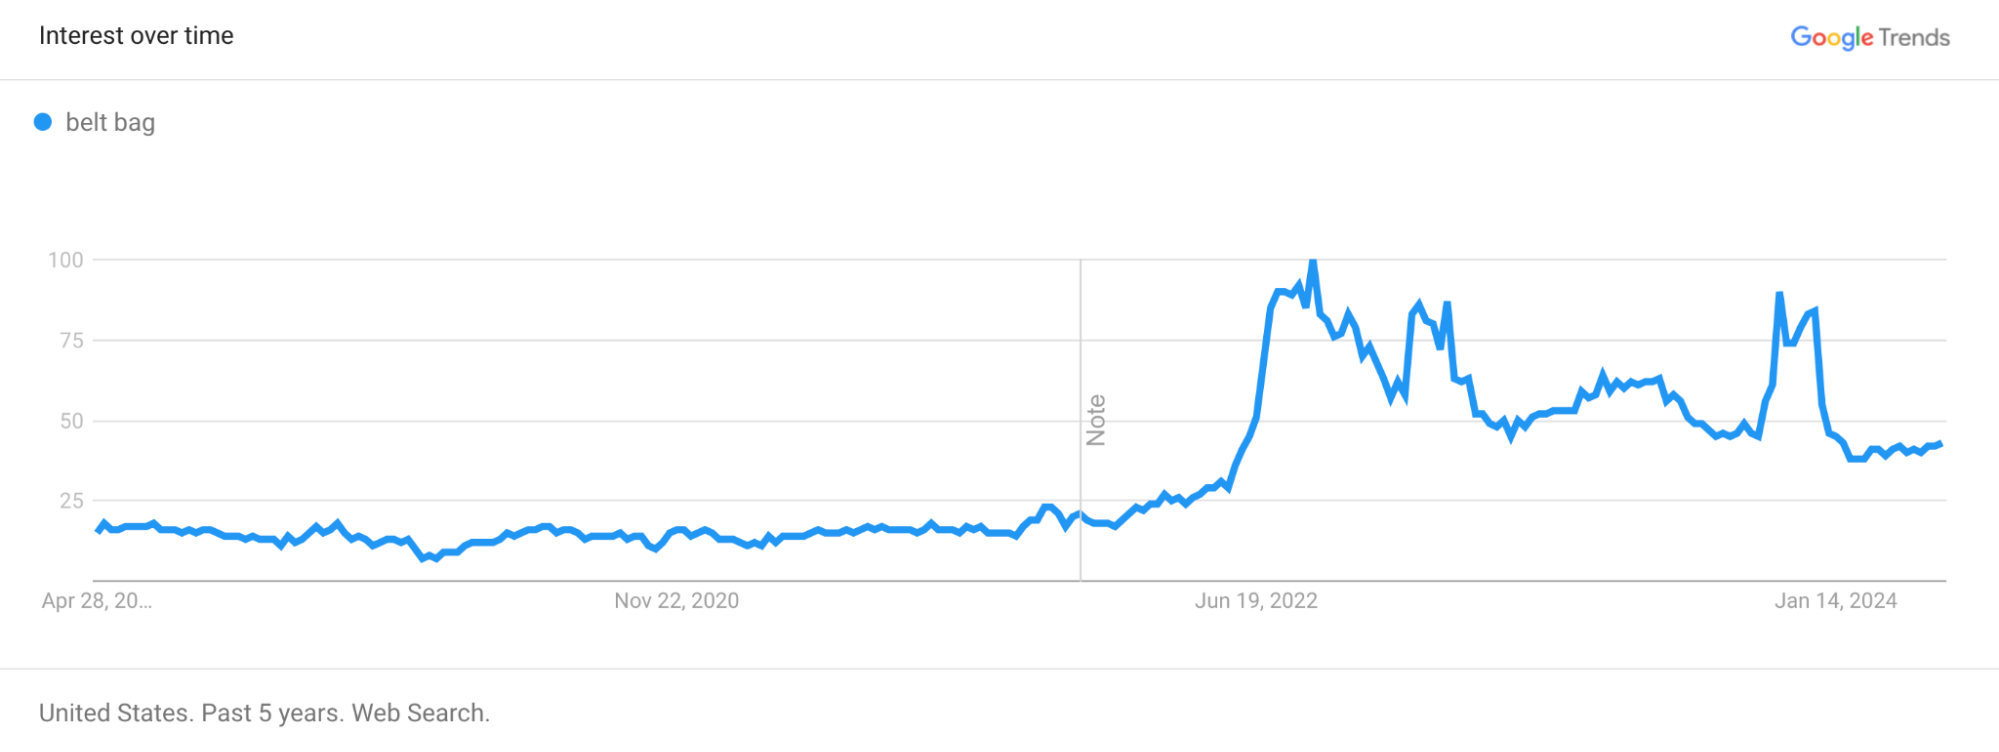 Belt bag demand shown on a Google Trends graph.